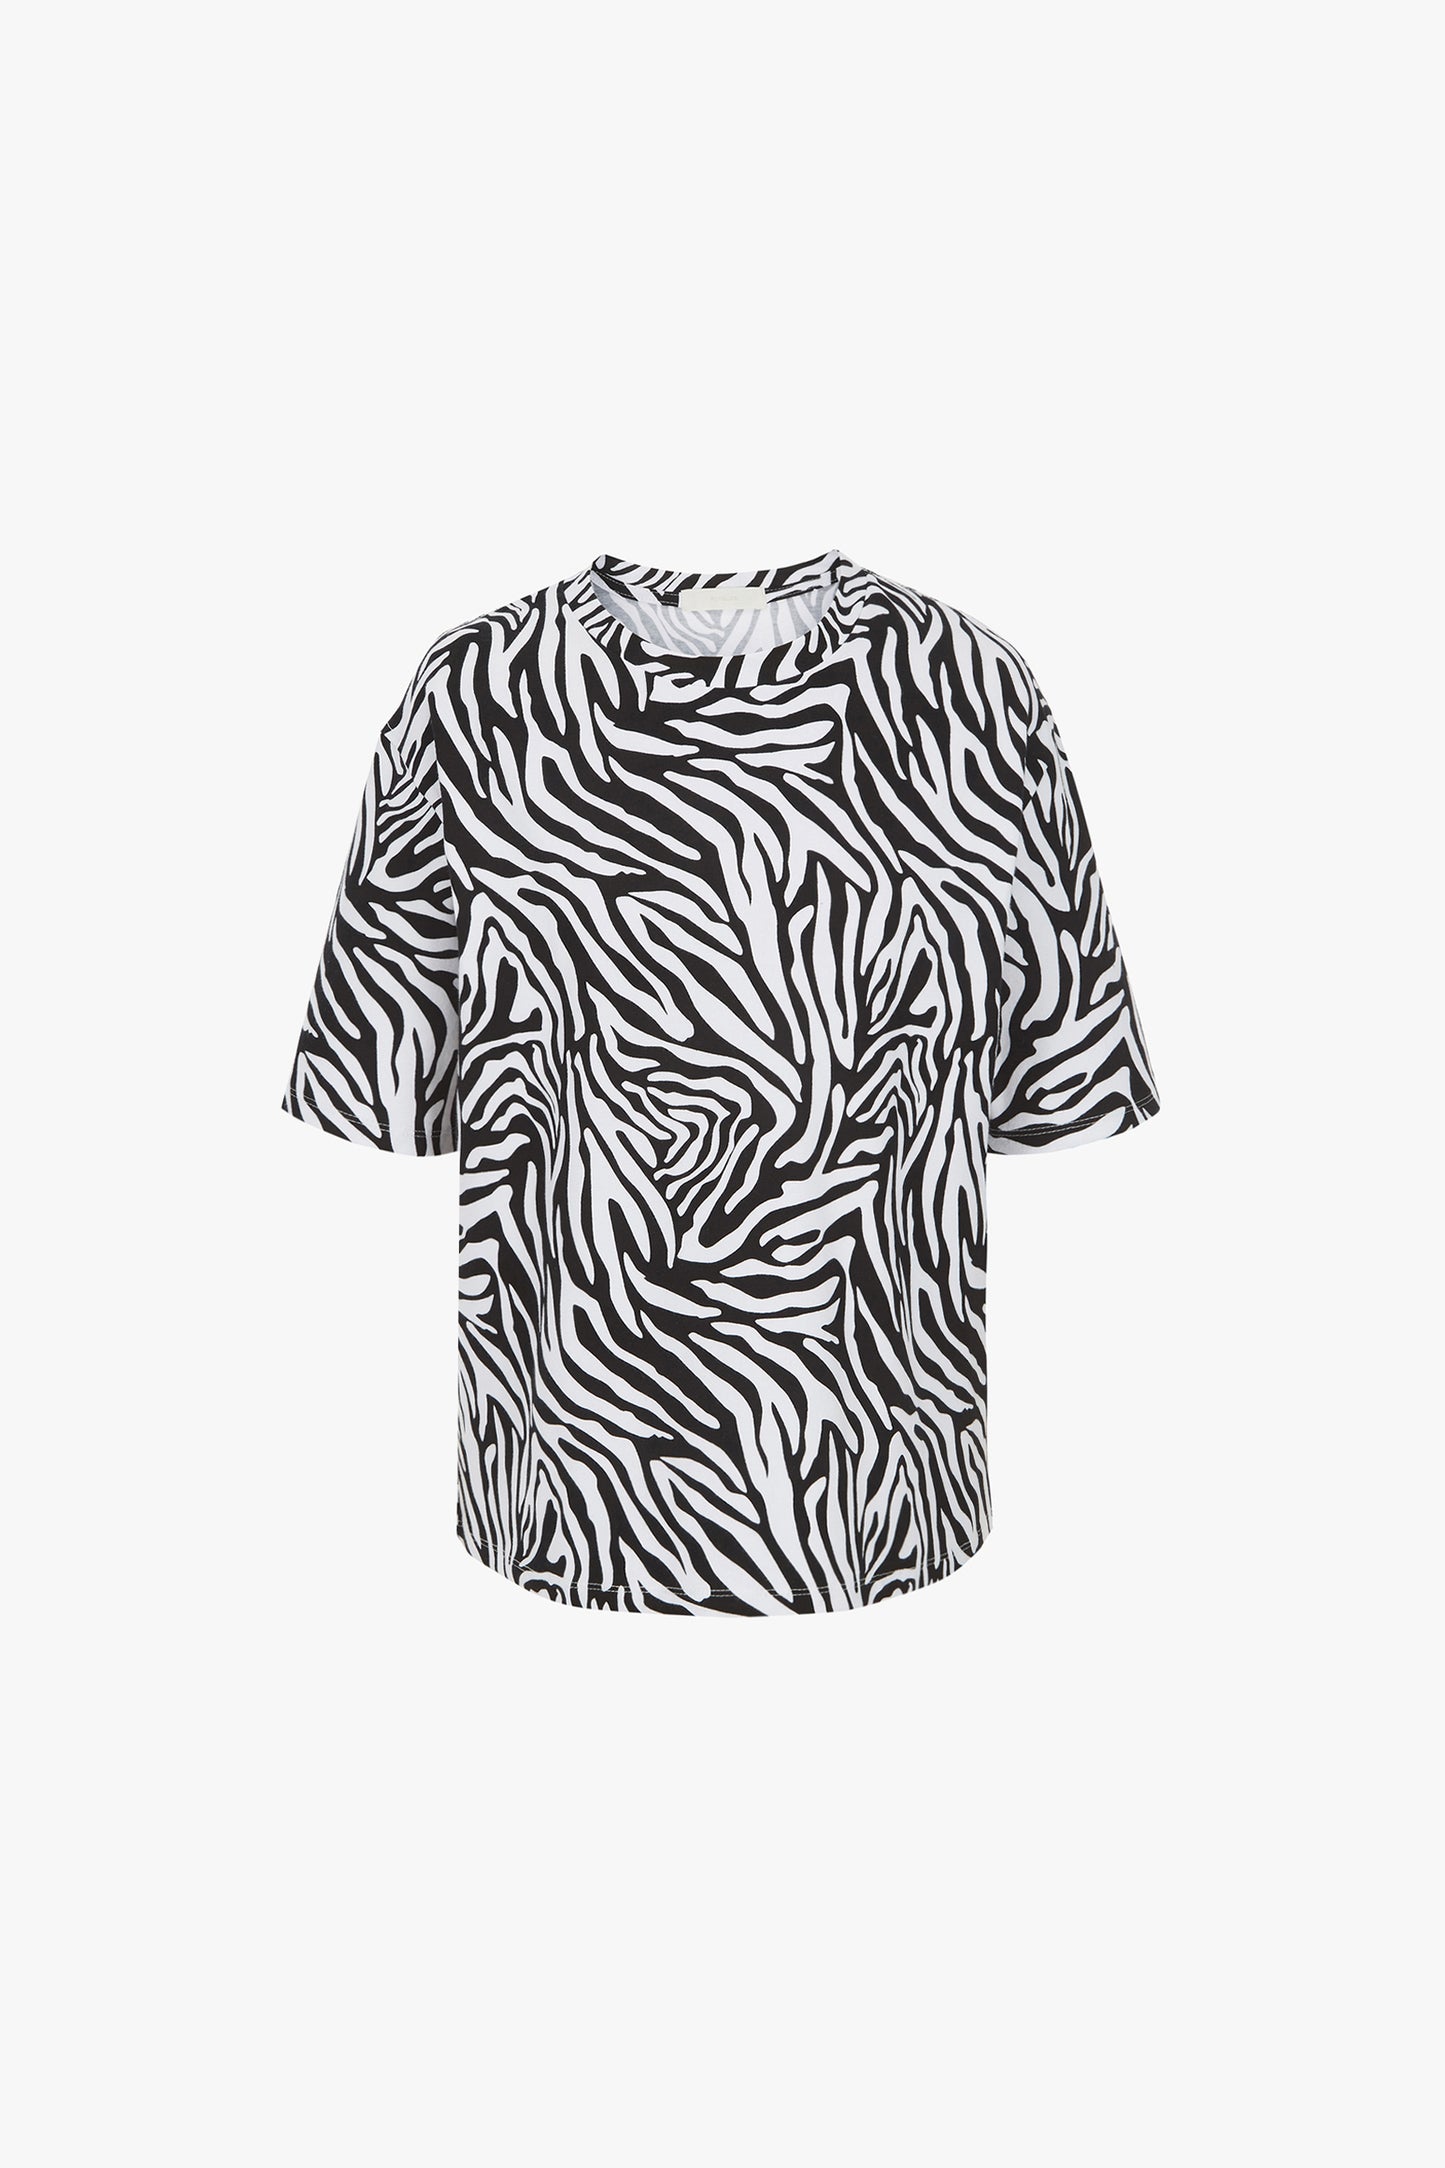 Zebra Print T-Shirt, White